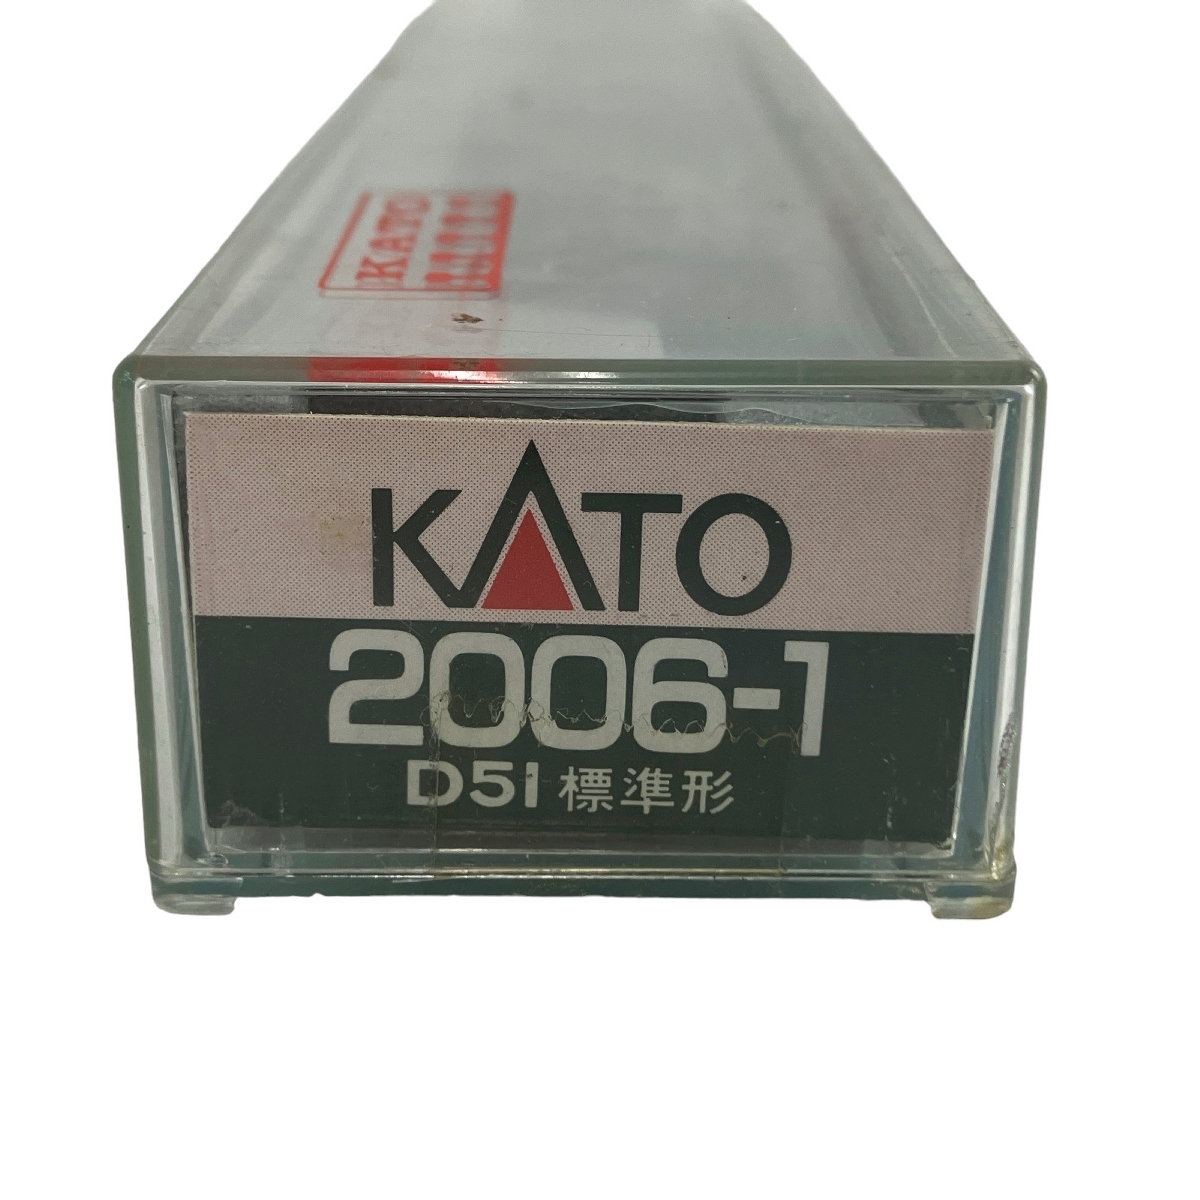 【動作保証】KATO 2006-1 D51形125号機 蒸気機関車 Nゲージ 鉄道模型 中古 N8875811_画像9